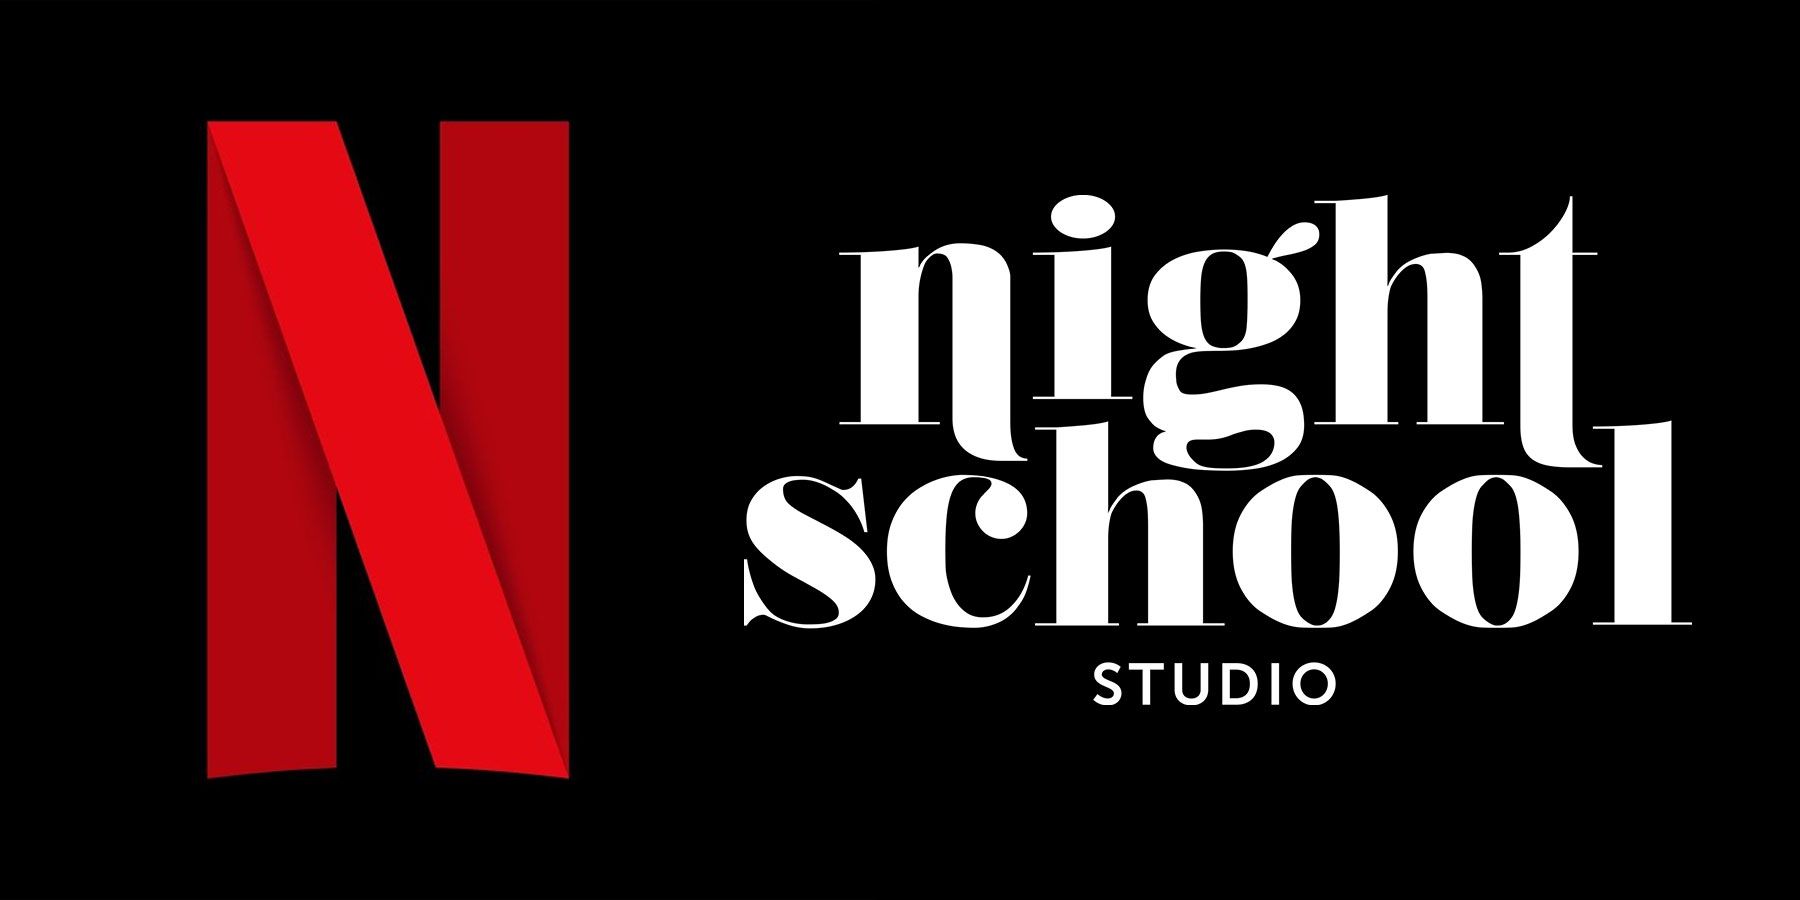 Achiziția Netflix Night School Studio este un semn bun pentru ambițiile sale de streaming